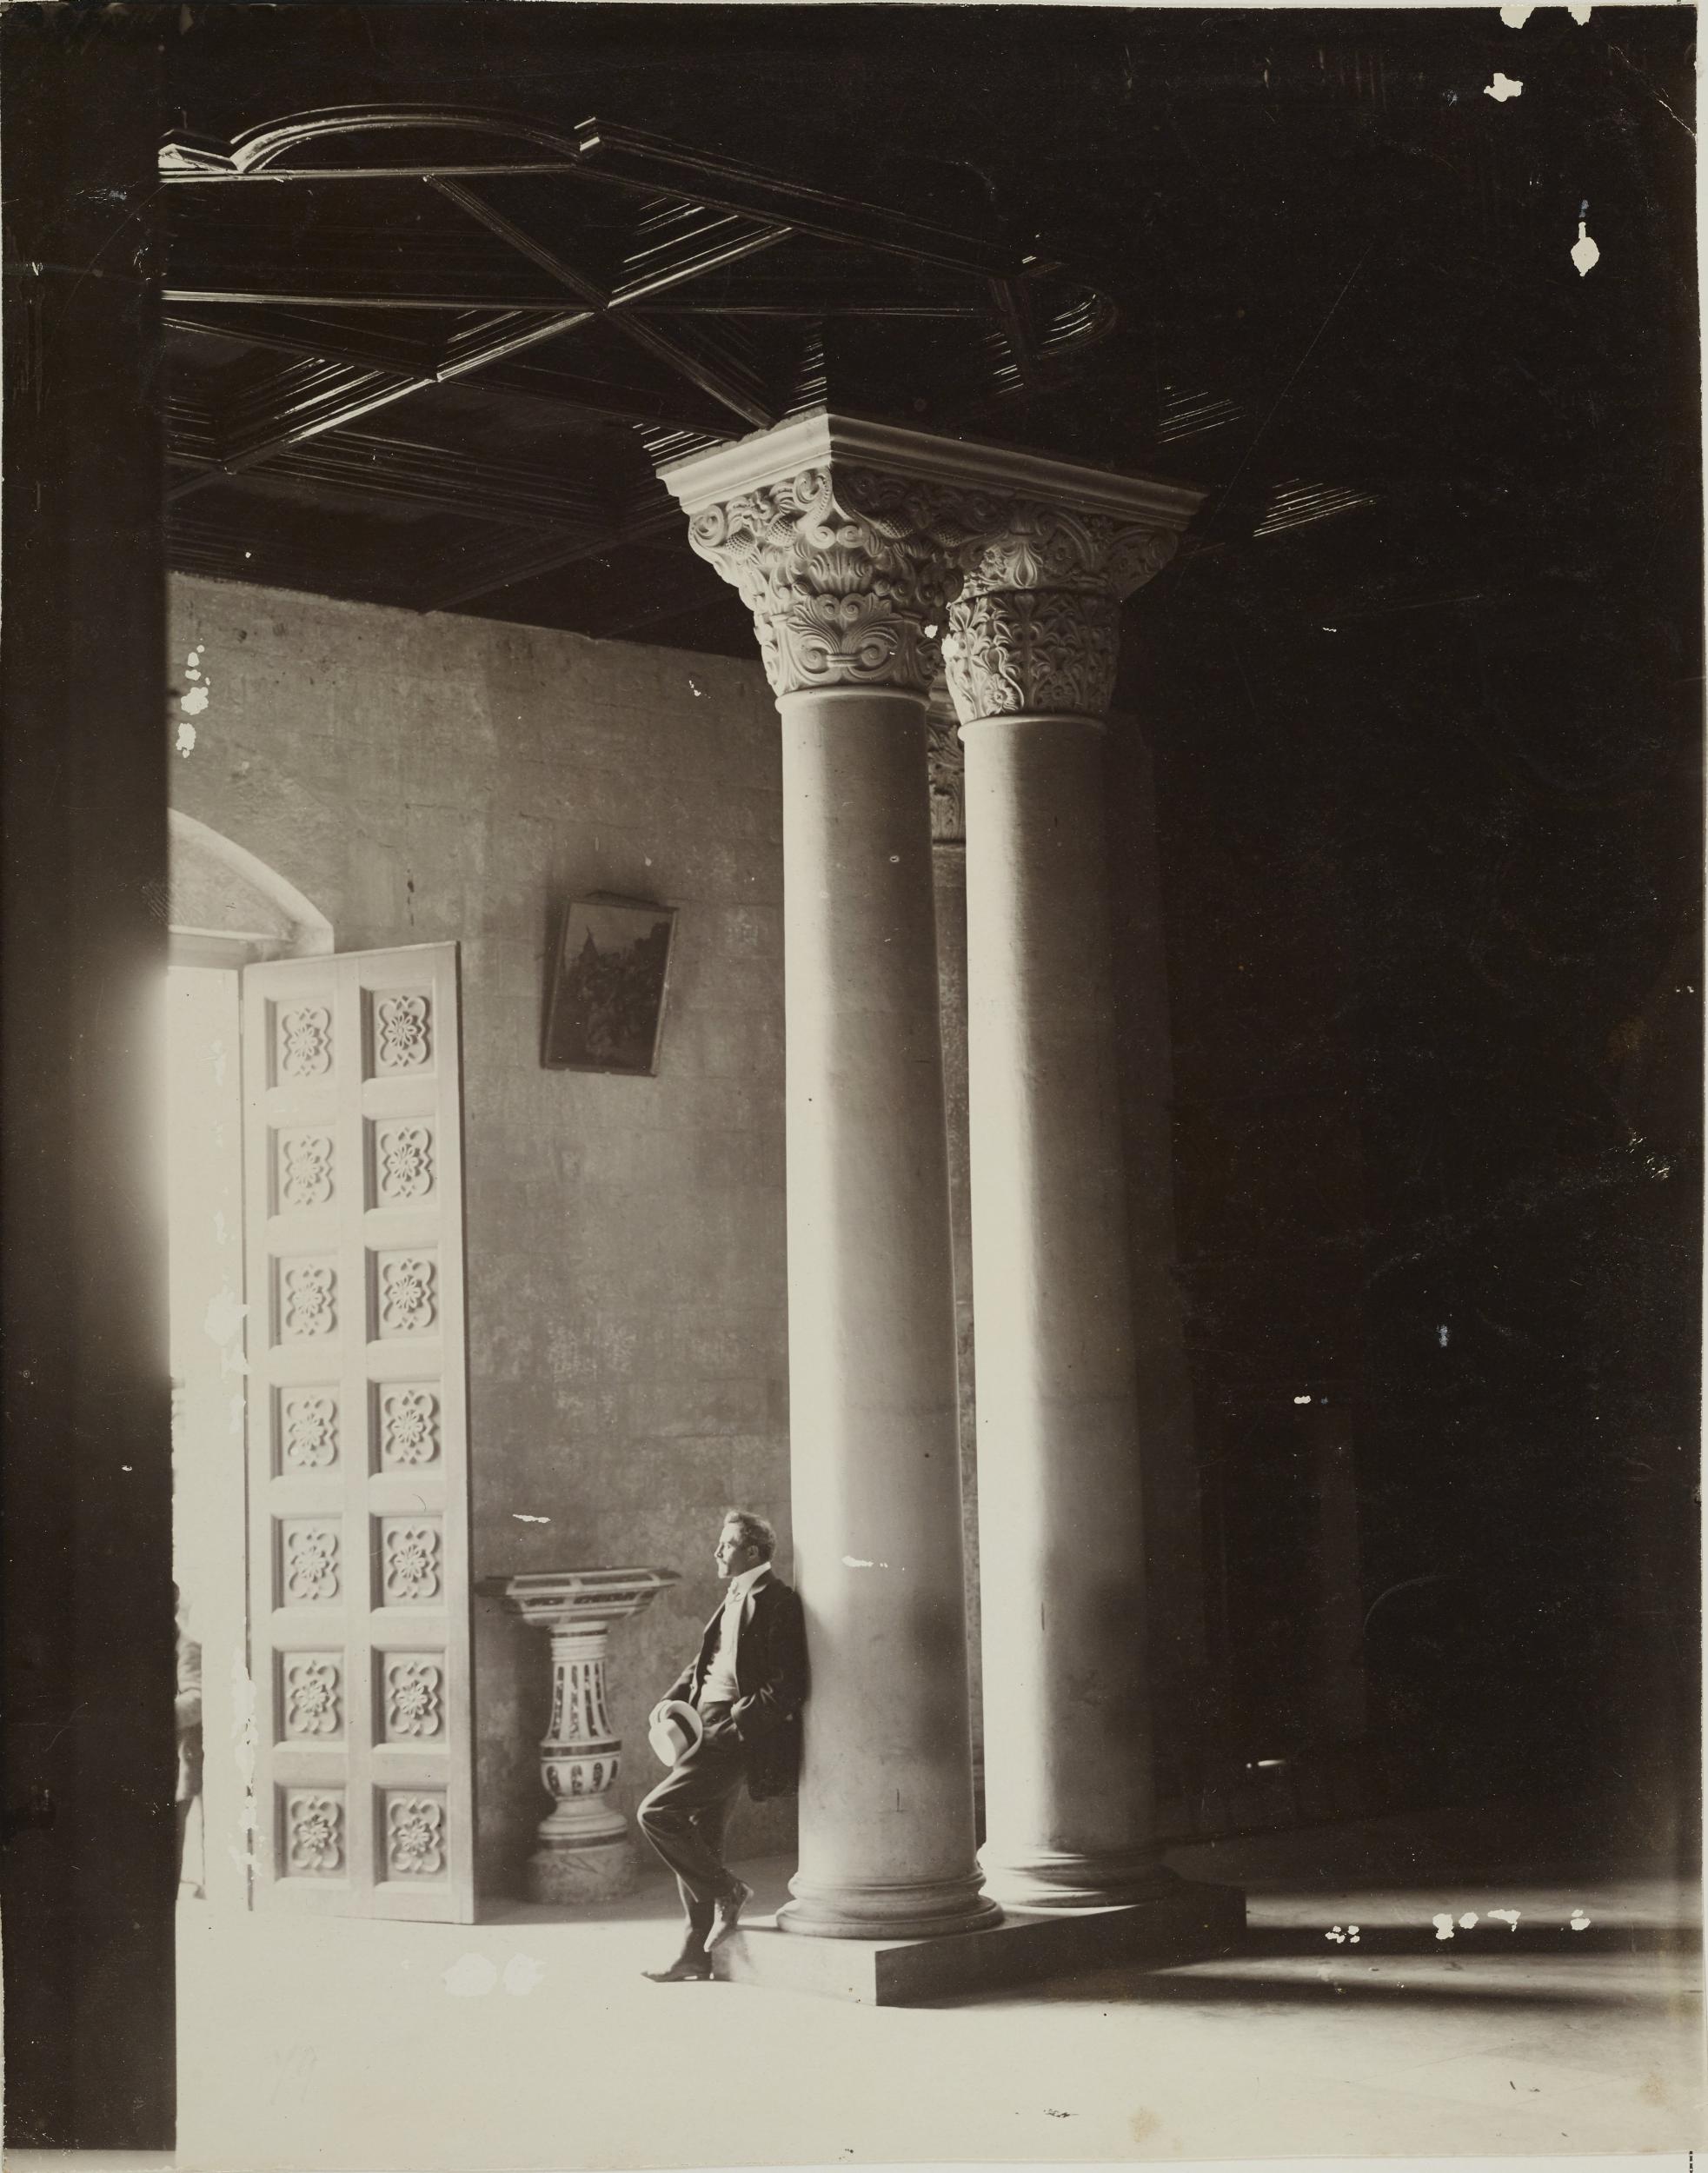 Fotografo non identificato, Acquaviva delle Fonti - Cattedrale, capitelli su colonne linate, 1901-1925, gelatina ai sali d'argento/carta, MPI130128